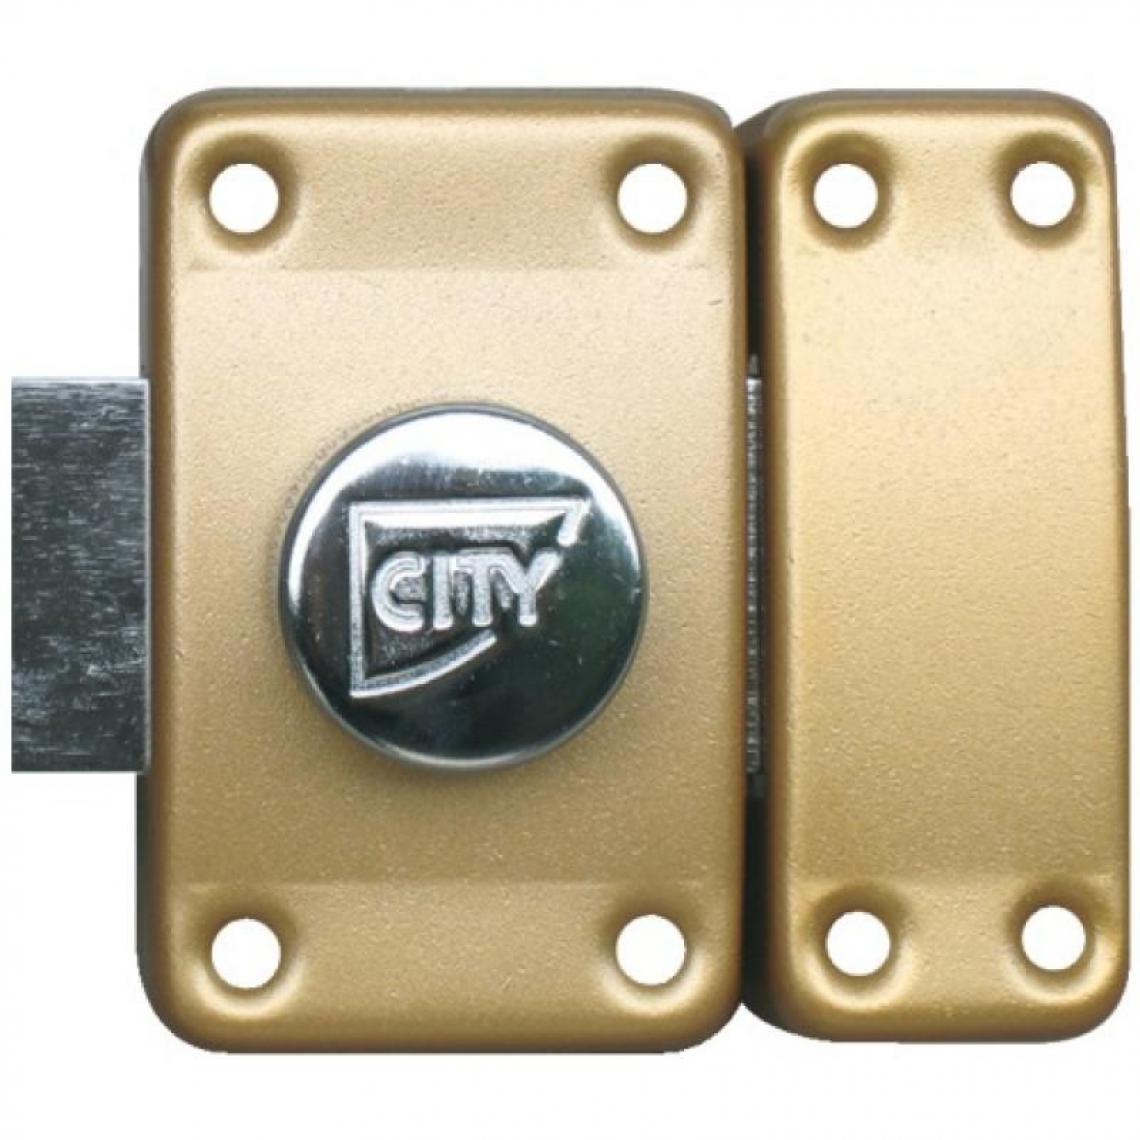 Iseo City - Verrou à bouton de sûreté Sur numéro - Huisserie bois City 25 - cylindre longueur 45 - Verrou, cadenas, targette